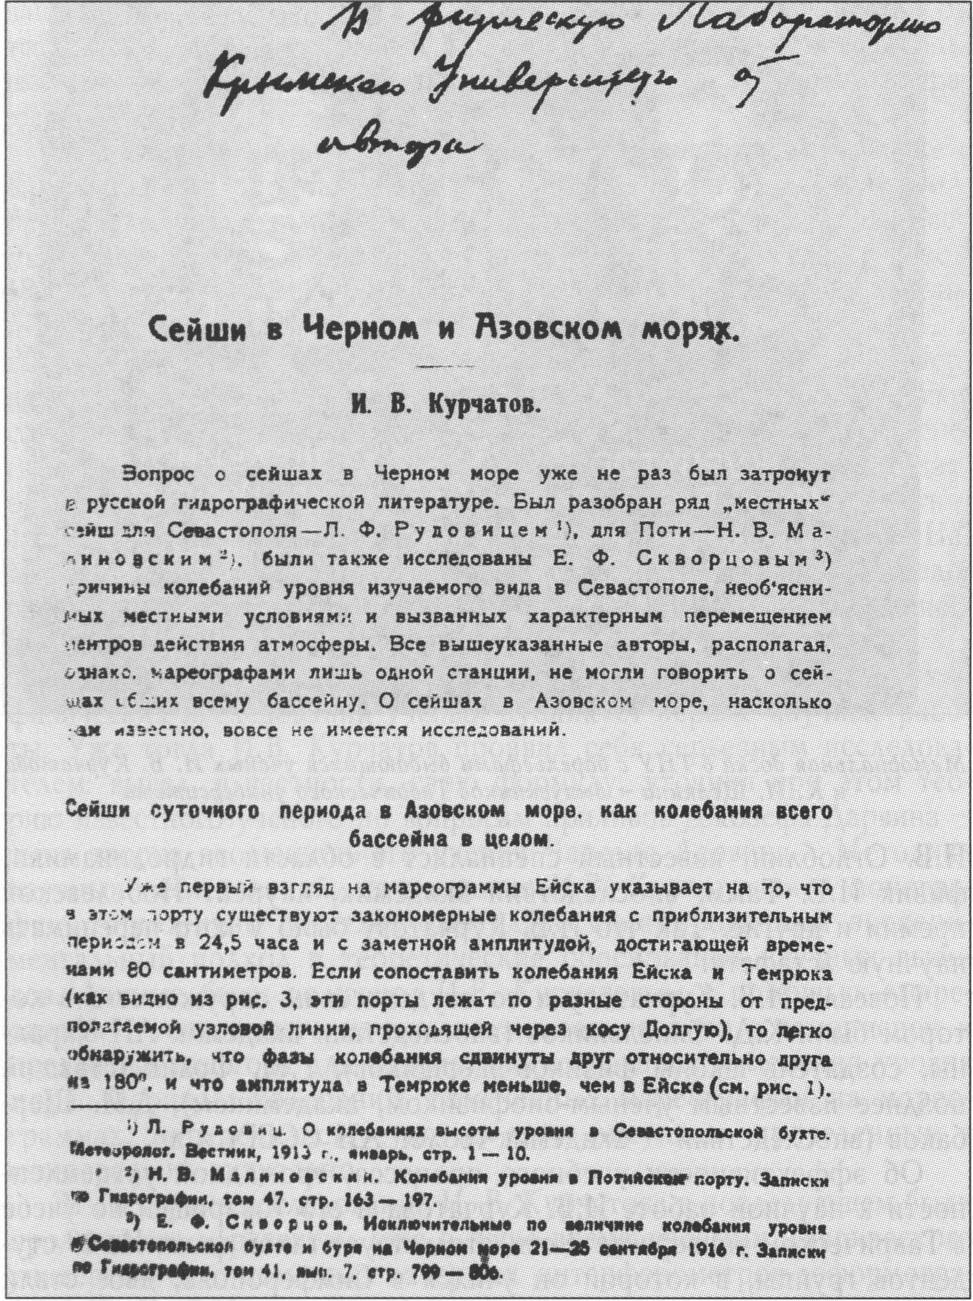 Титульная страница статьи И.В. Курчатова «Сейши в Черном и Азовском морях» (1925, с авторским автографом)